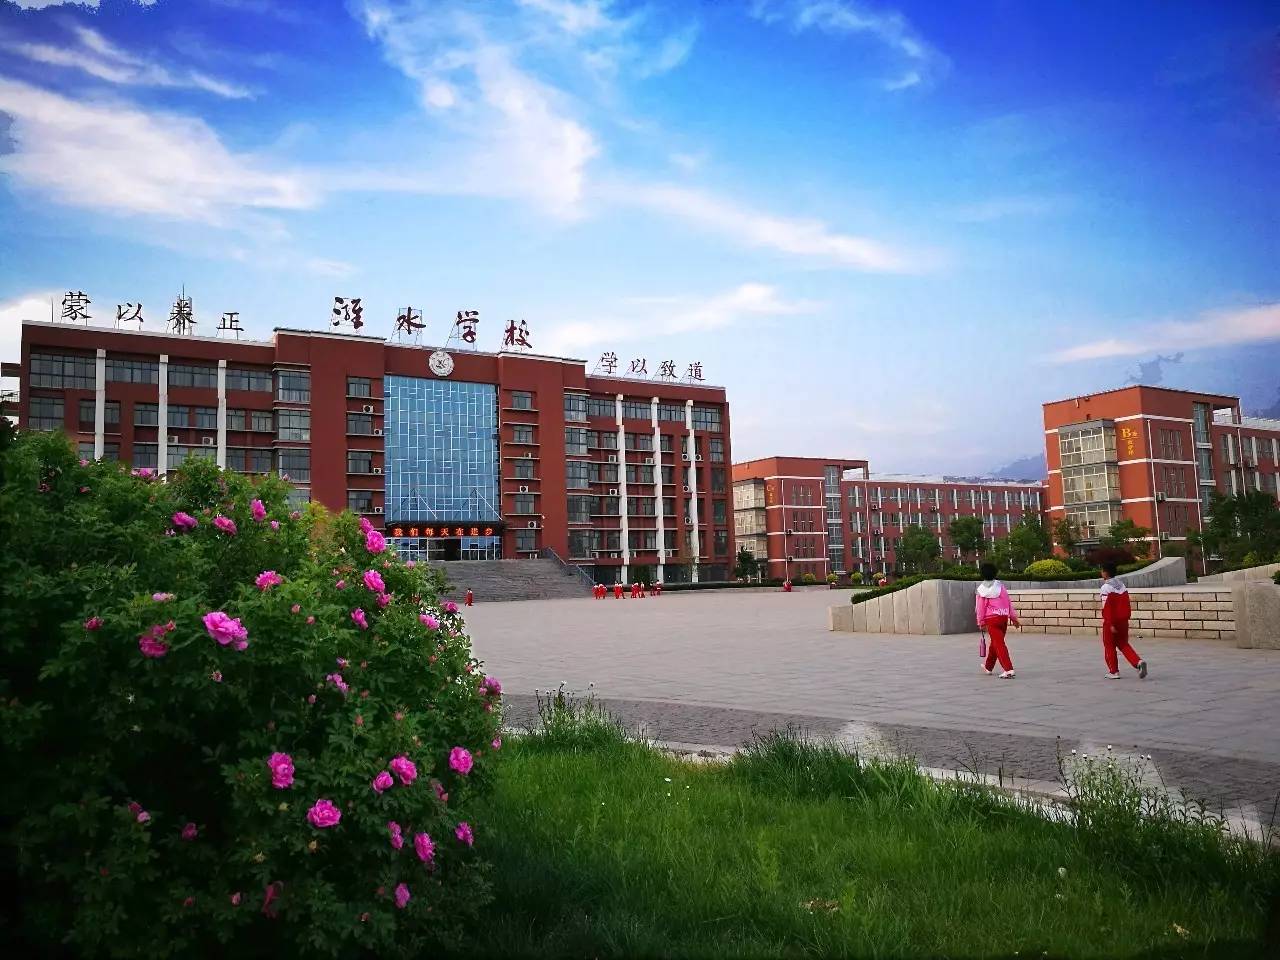 昌邑潍水学校是一所一校两区,高起点,高标准,九年一贯寄宿制学校,地处